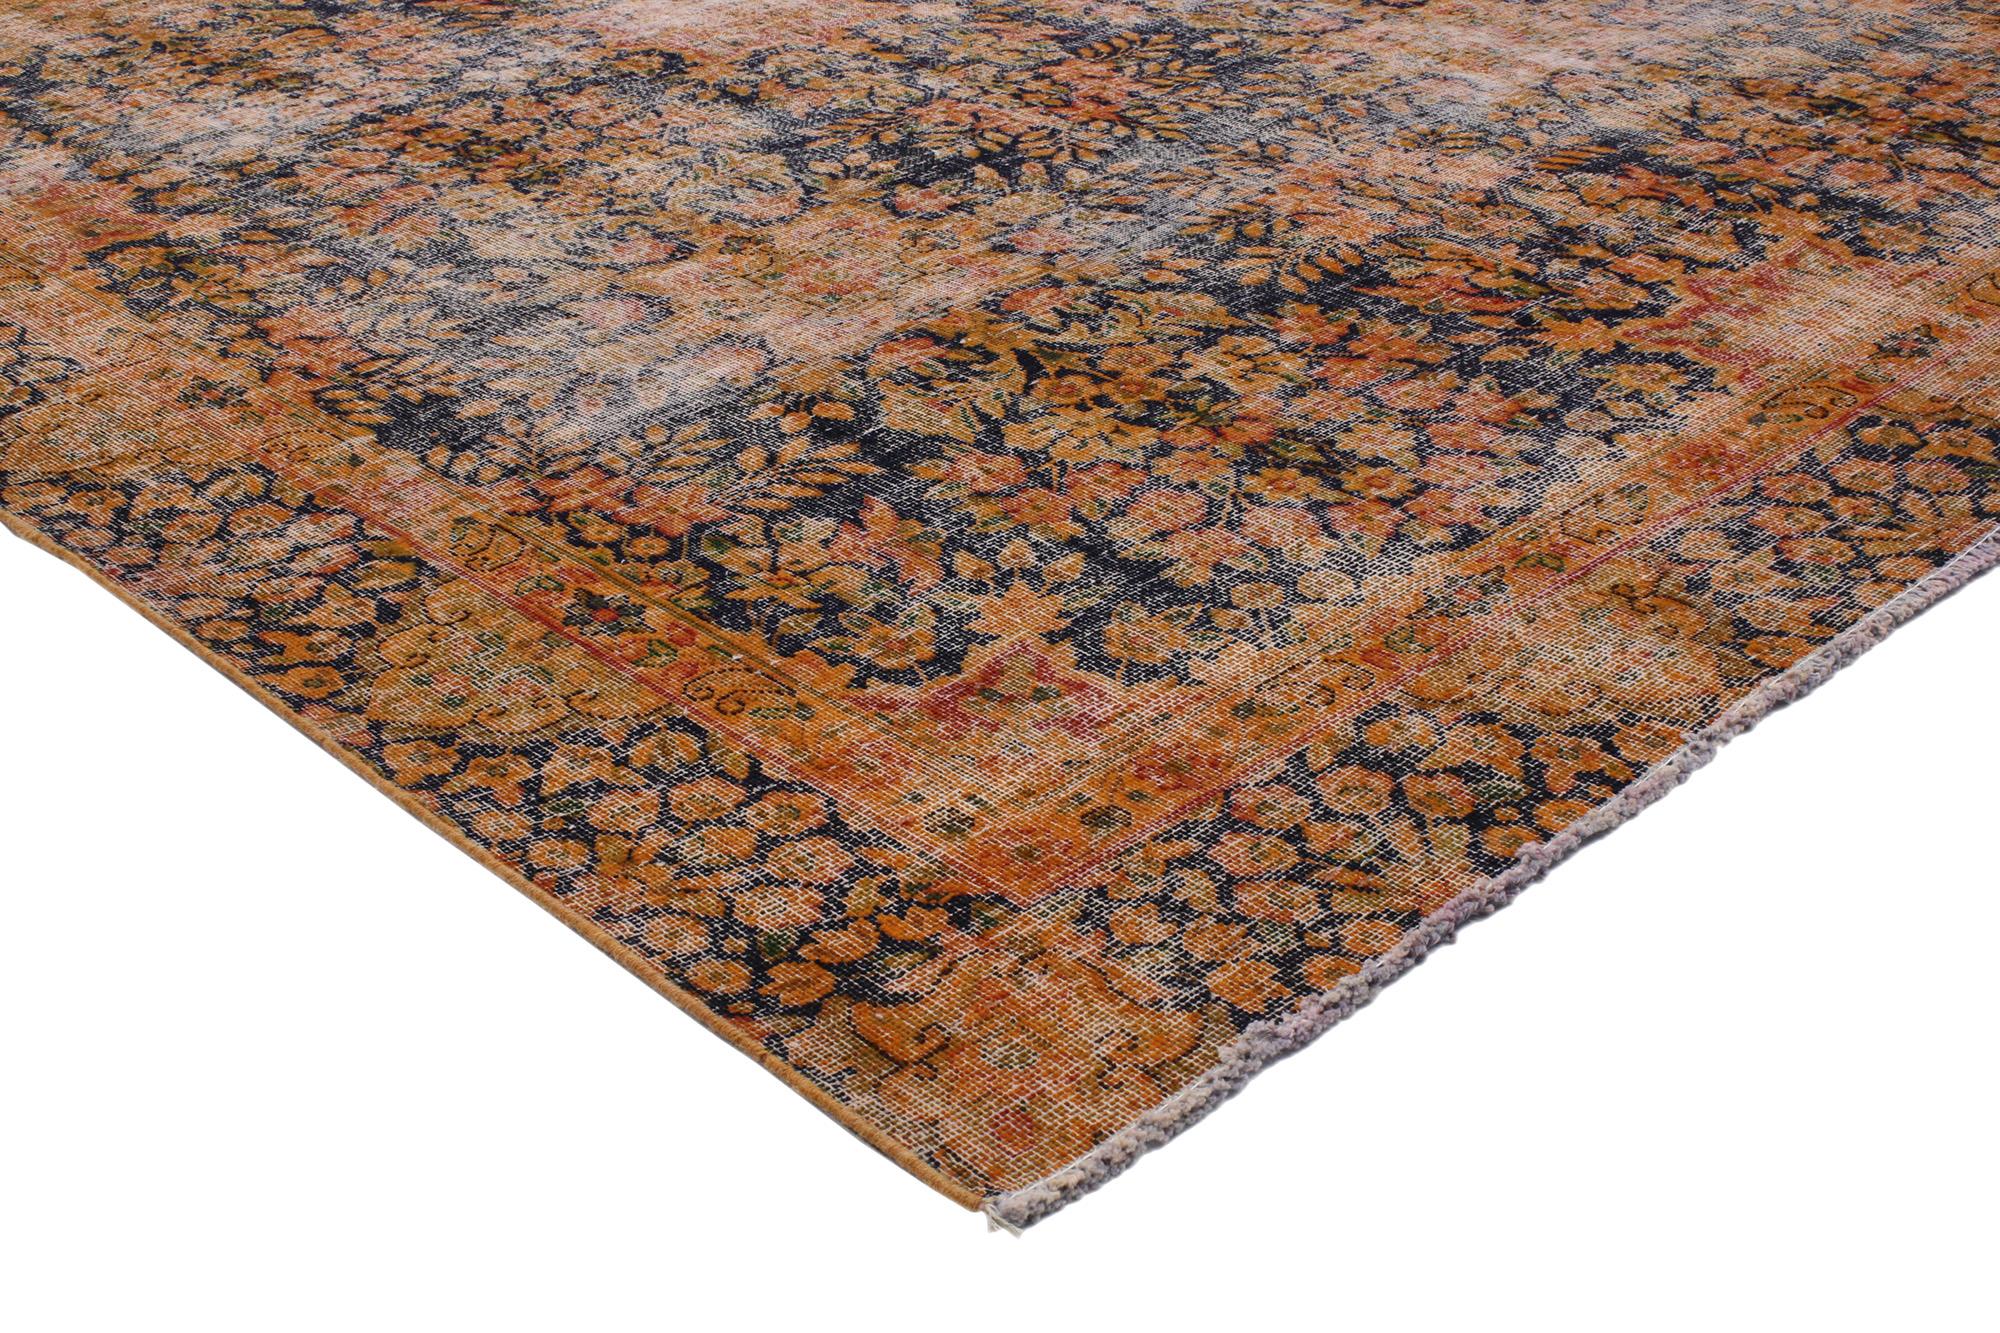 80304 Distressed Vintage Persian Kerman Rug, 07'01 x 10'03. Distressed Persian Kerman Teppiche sind eine spezielle Art von Perserteppichen, die durch absichtliche Distressing-Techniken ein Vintage-Erscheinungsbild erhalten, das den Charme antiker